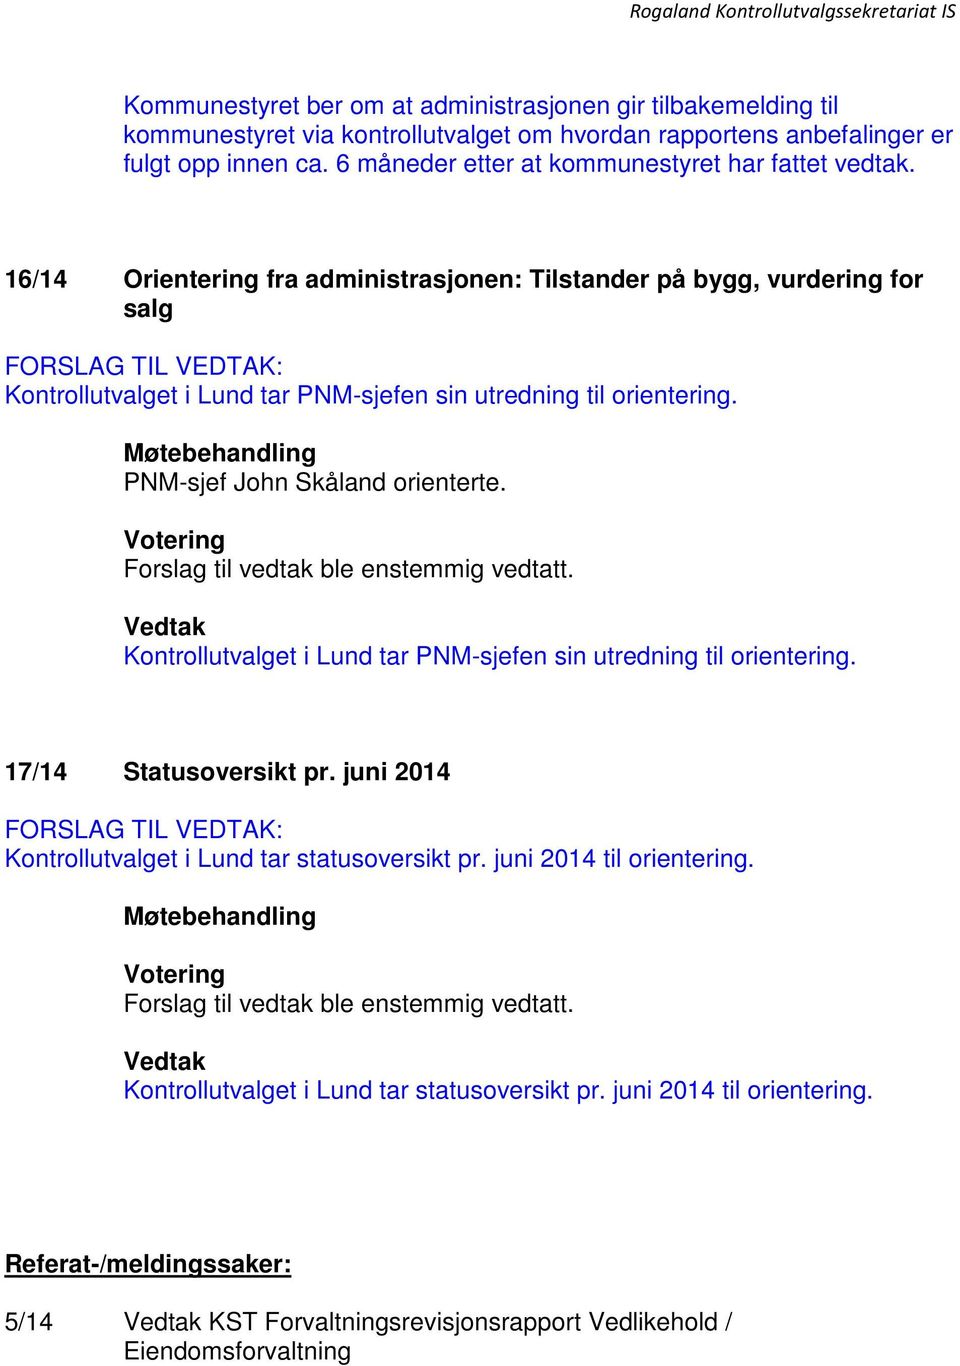 16/14 Orientering fra administrasjonen: Tilstander på bygg, vurdering for salg Kontrollutvalget i Lund tar PNM-sjefen sin utredning til orientering. PNM-sjef John Skåland orienterte.